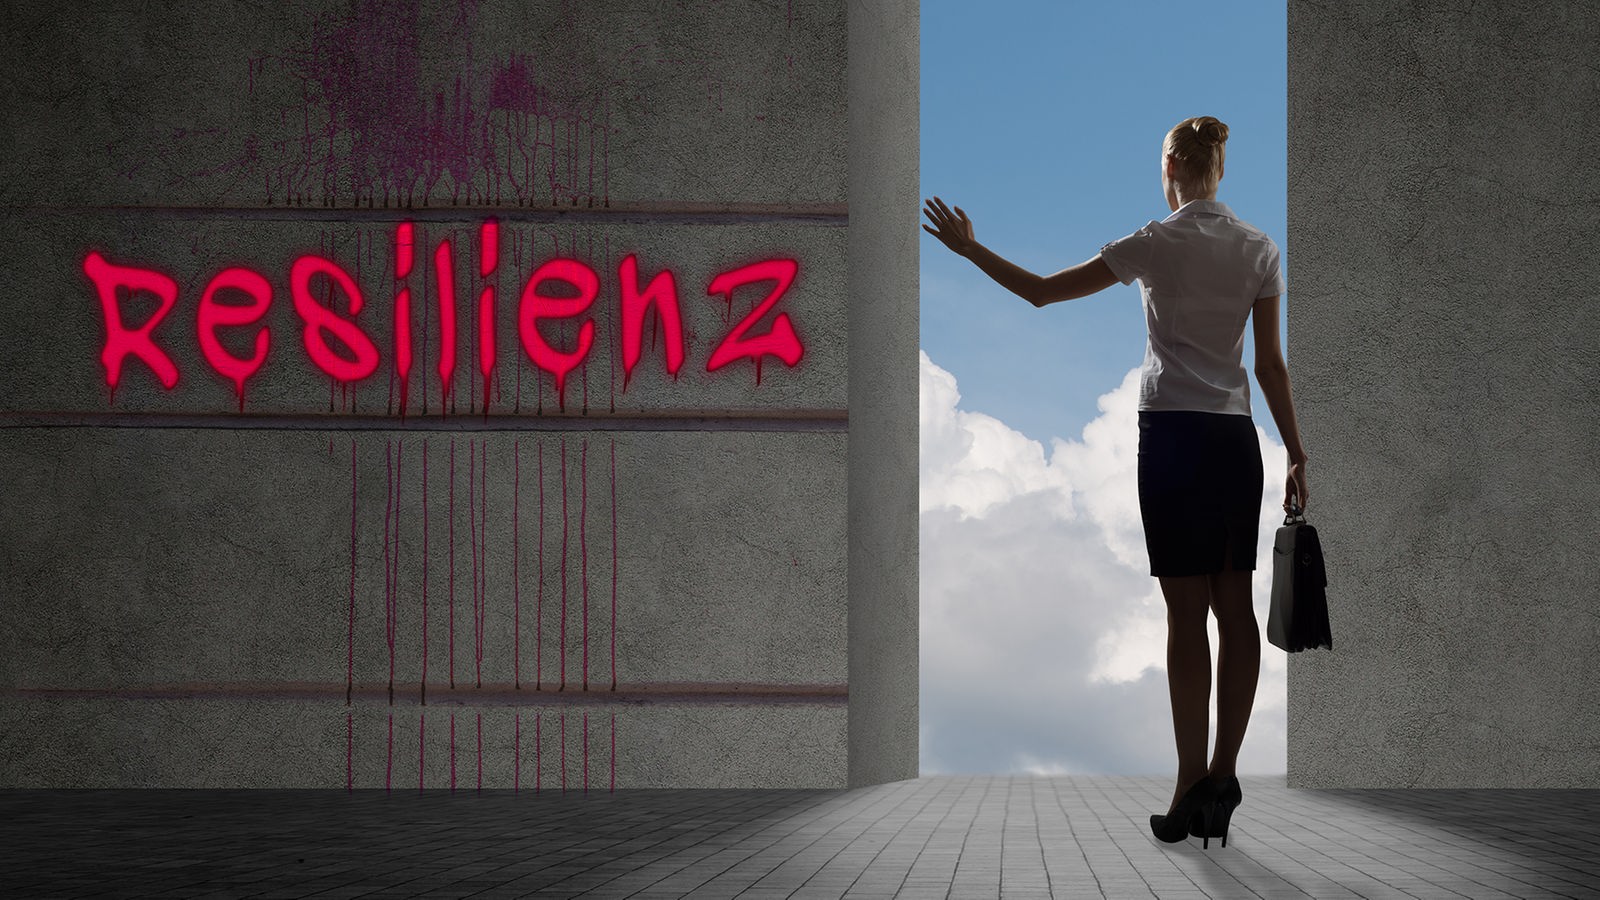 Grafik: Eine Frau steht an der Öffnung einer dicken Mauer und schaut auf den blauen Himmel mit Wolken. Links auf der Mauer steht 'Resilienz'.